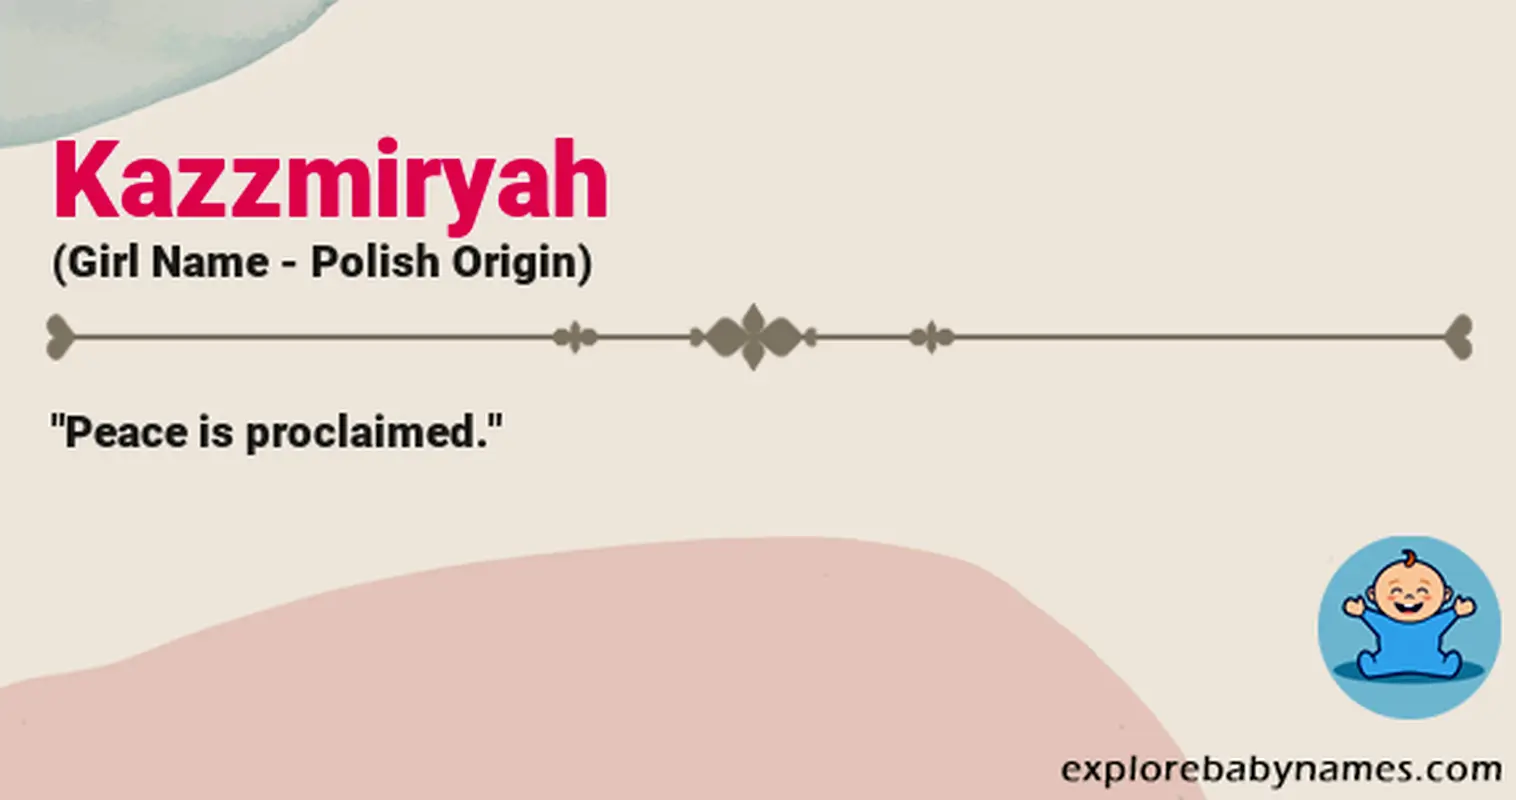 Meaning of Kazzmiryah